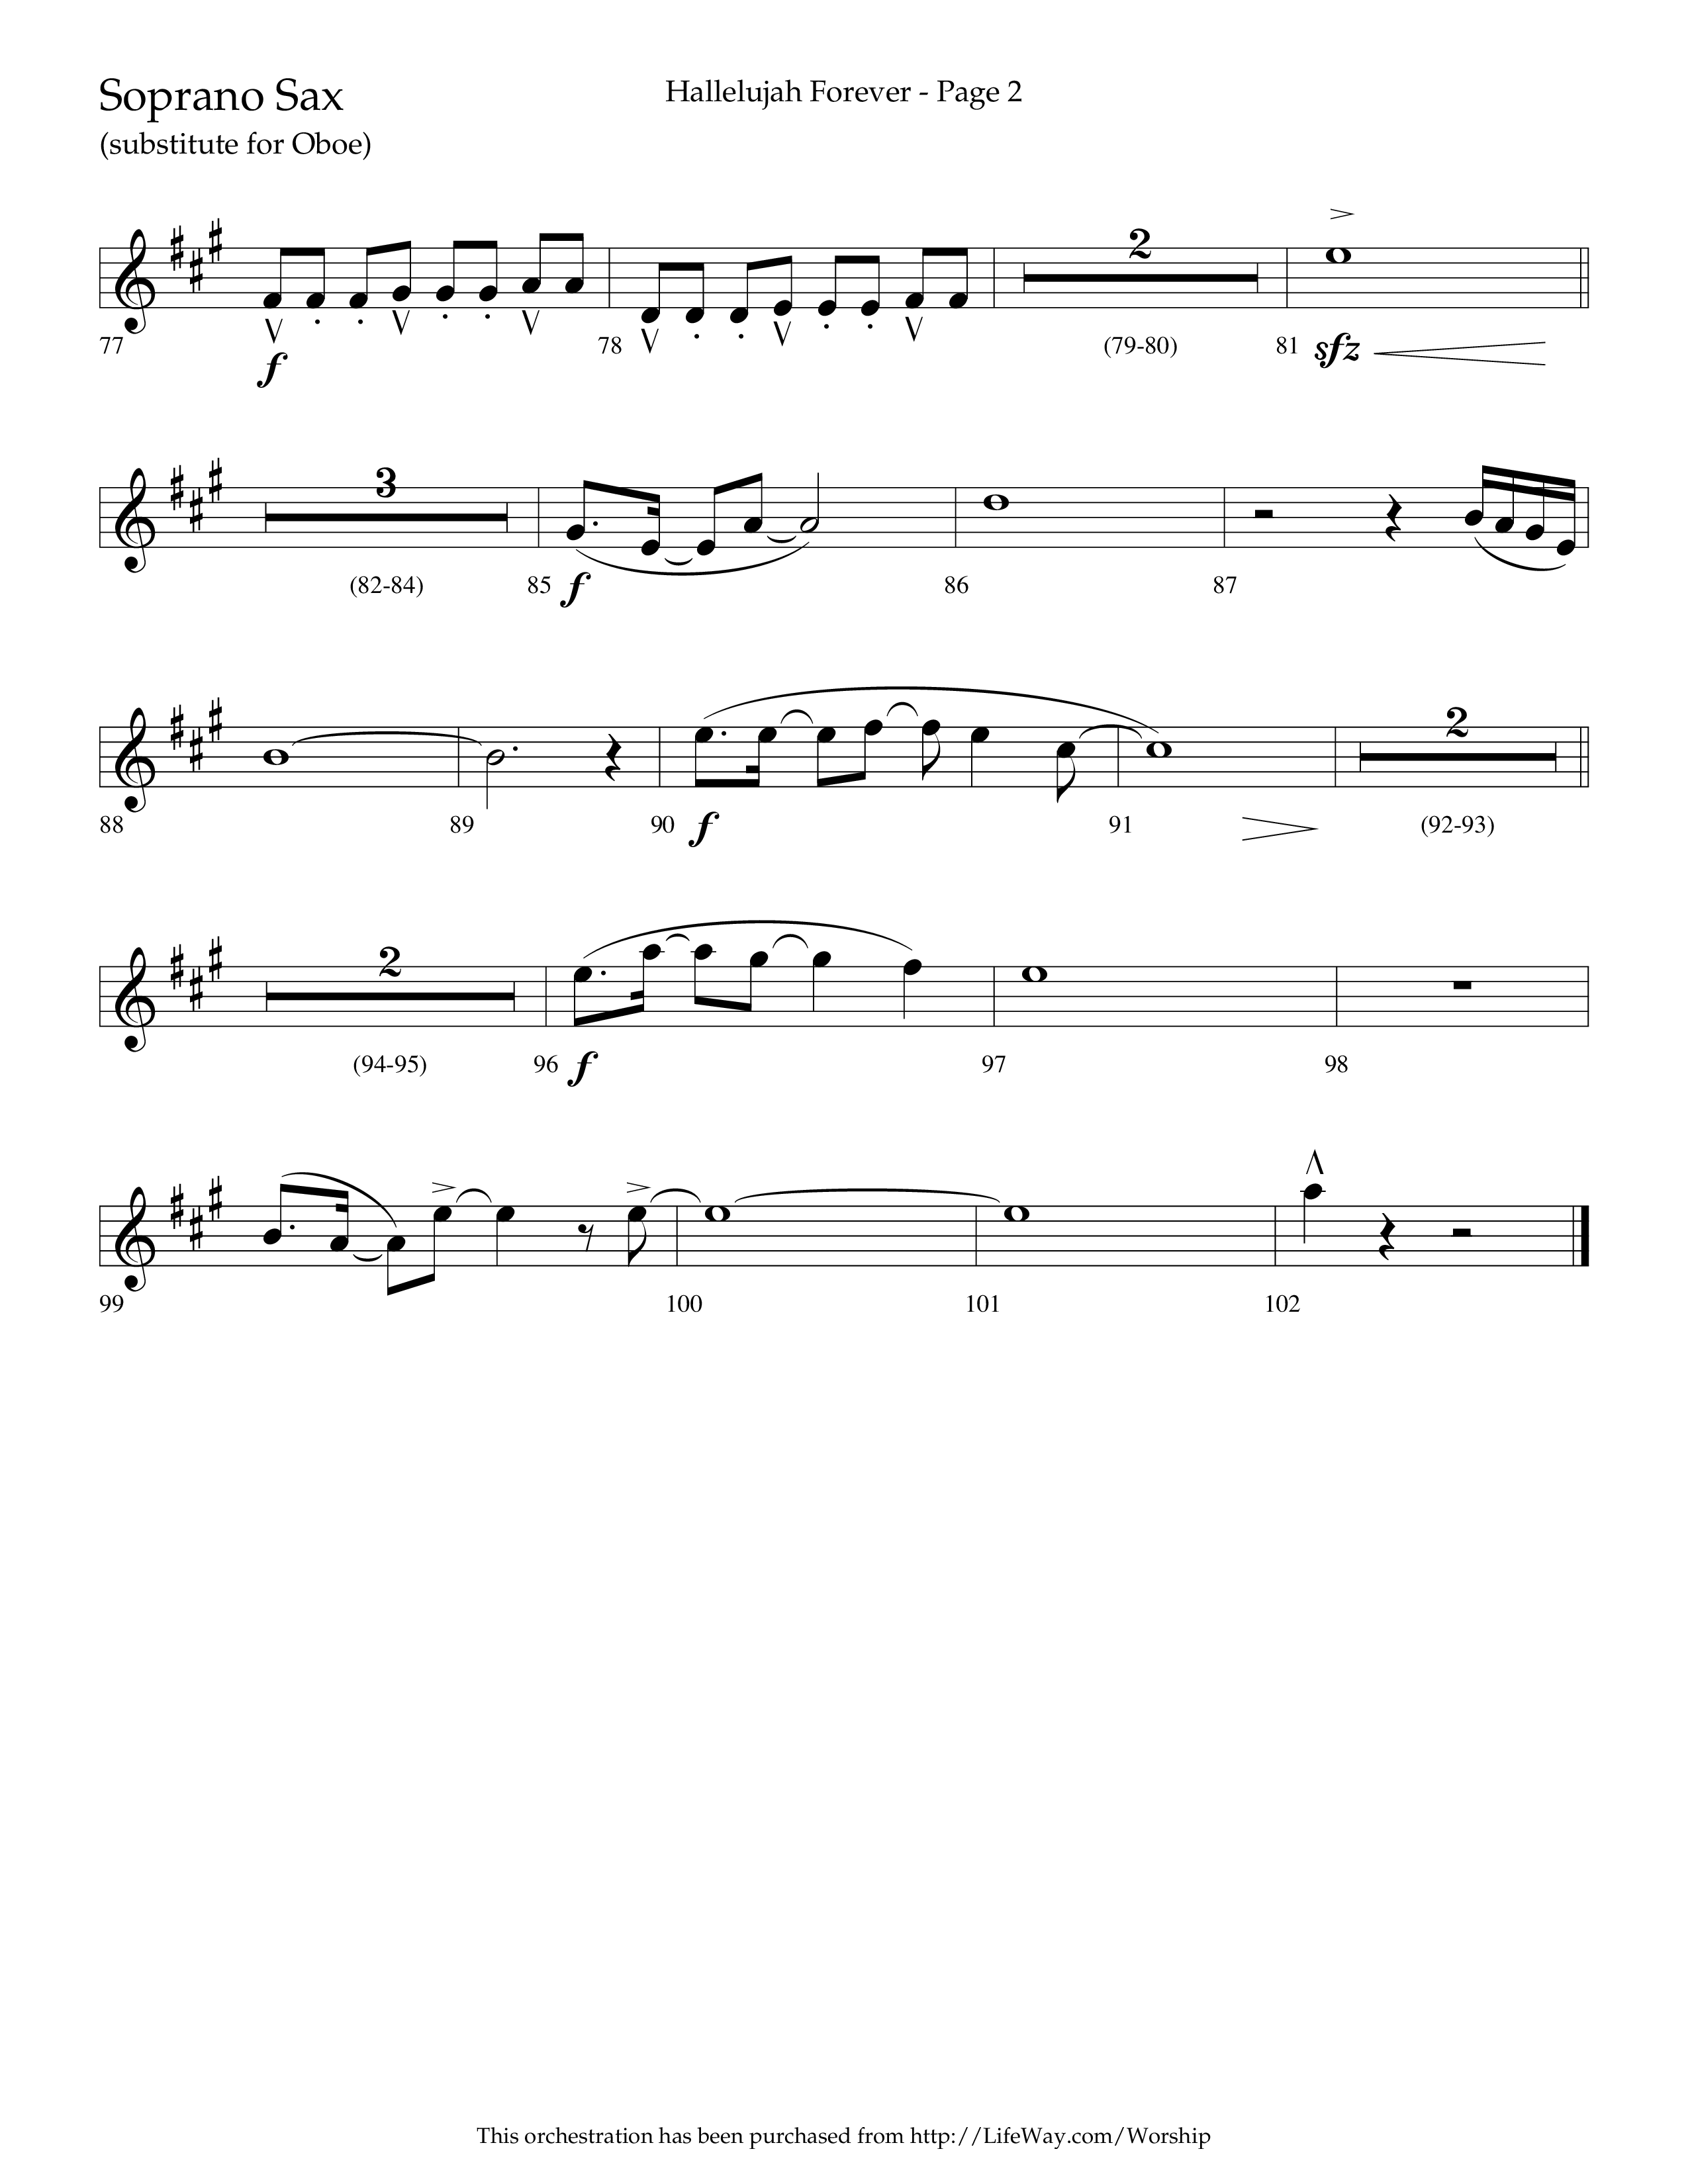 Hallelujah Forever (Choral Anthem SATB) Soprano Sax (Lifeway Choral / Arr. Cliff Duren)